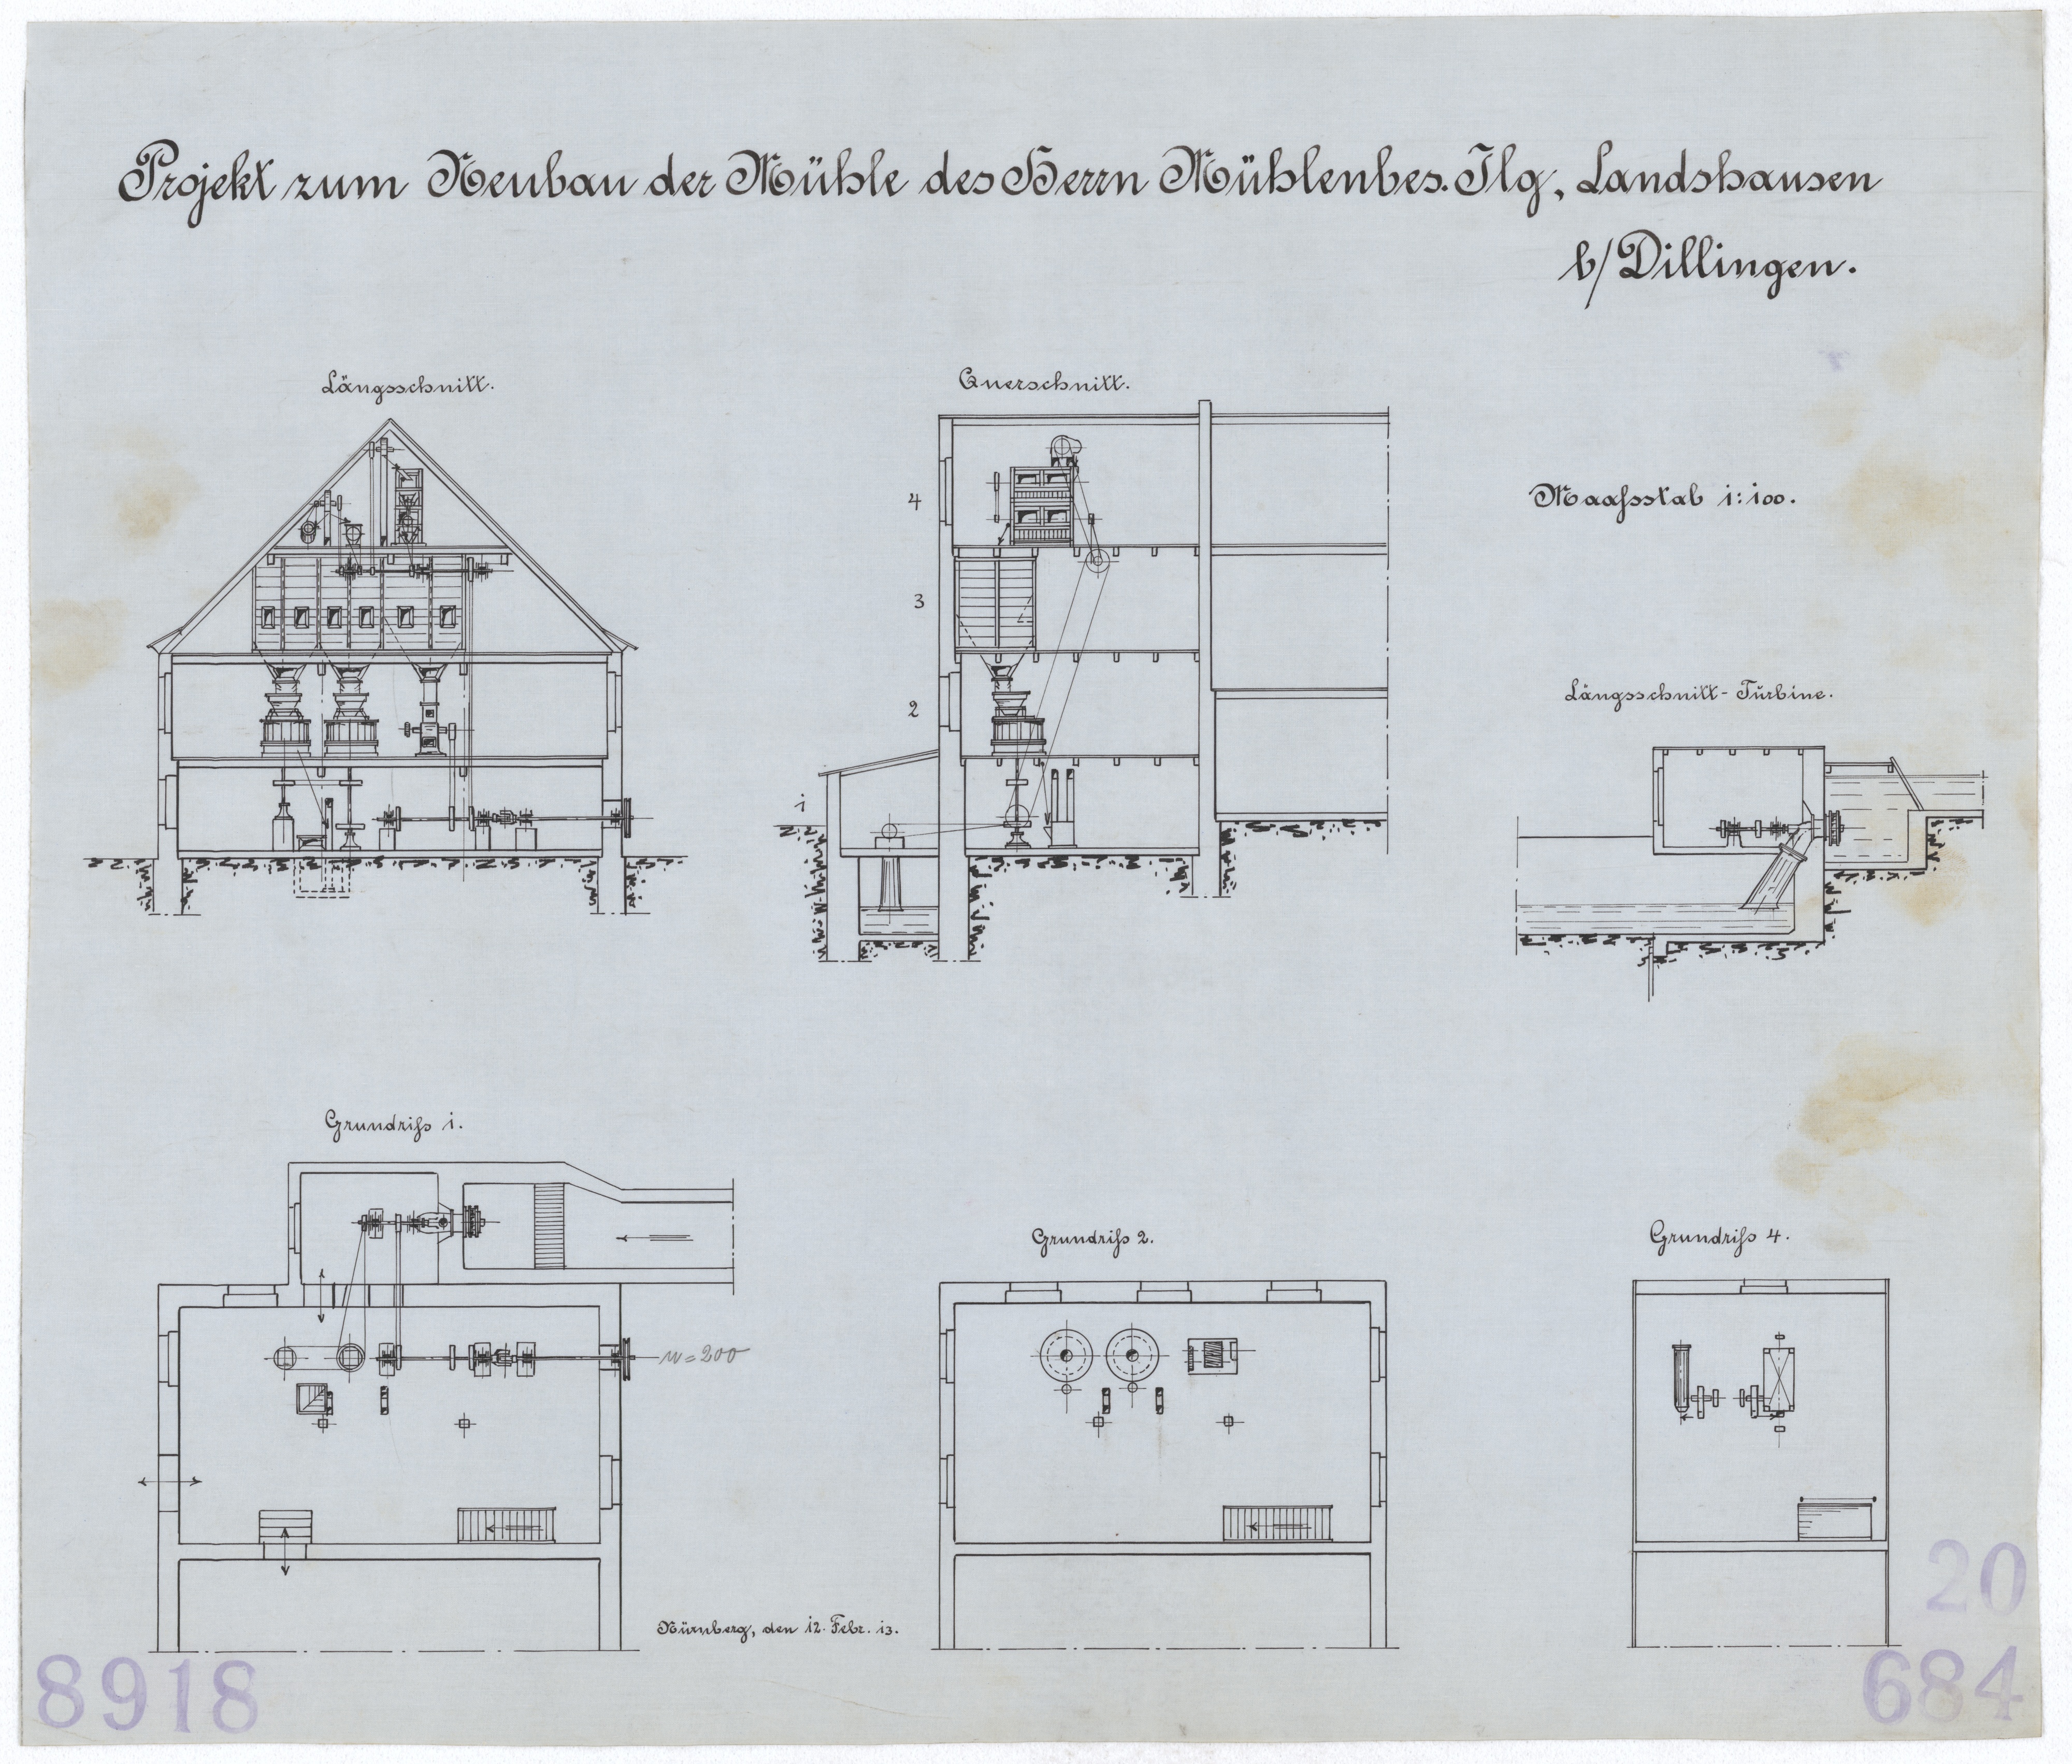 Technische Zeichnung : Projekt zum Neubau der Mühle des Herrn Mühlenbesitzer Ilg, Landshausen bei Dillingen (Stiftung Deutsches Technikmuseum Berlin CC BY-SA)